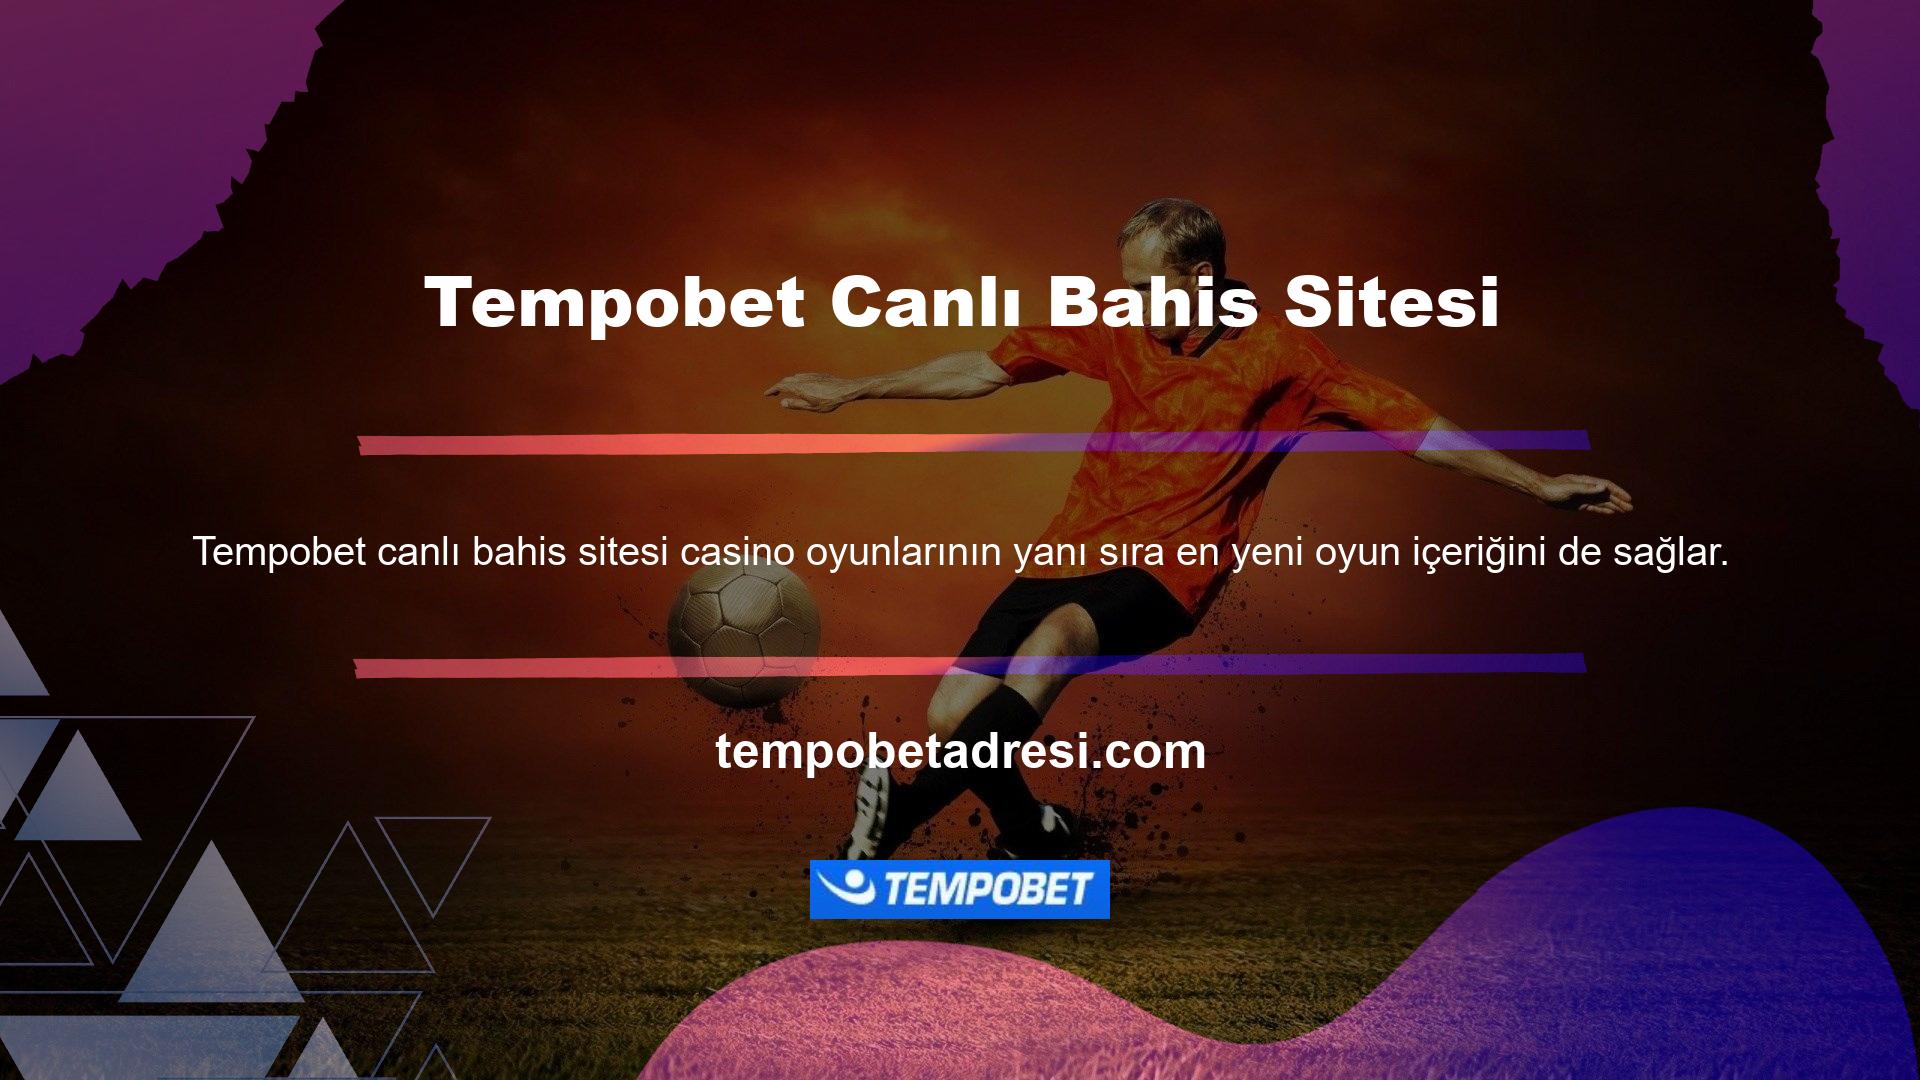 Casino oyunlarını deneyimlemek isteyenler için Tempobet tercih edilen seçimdir